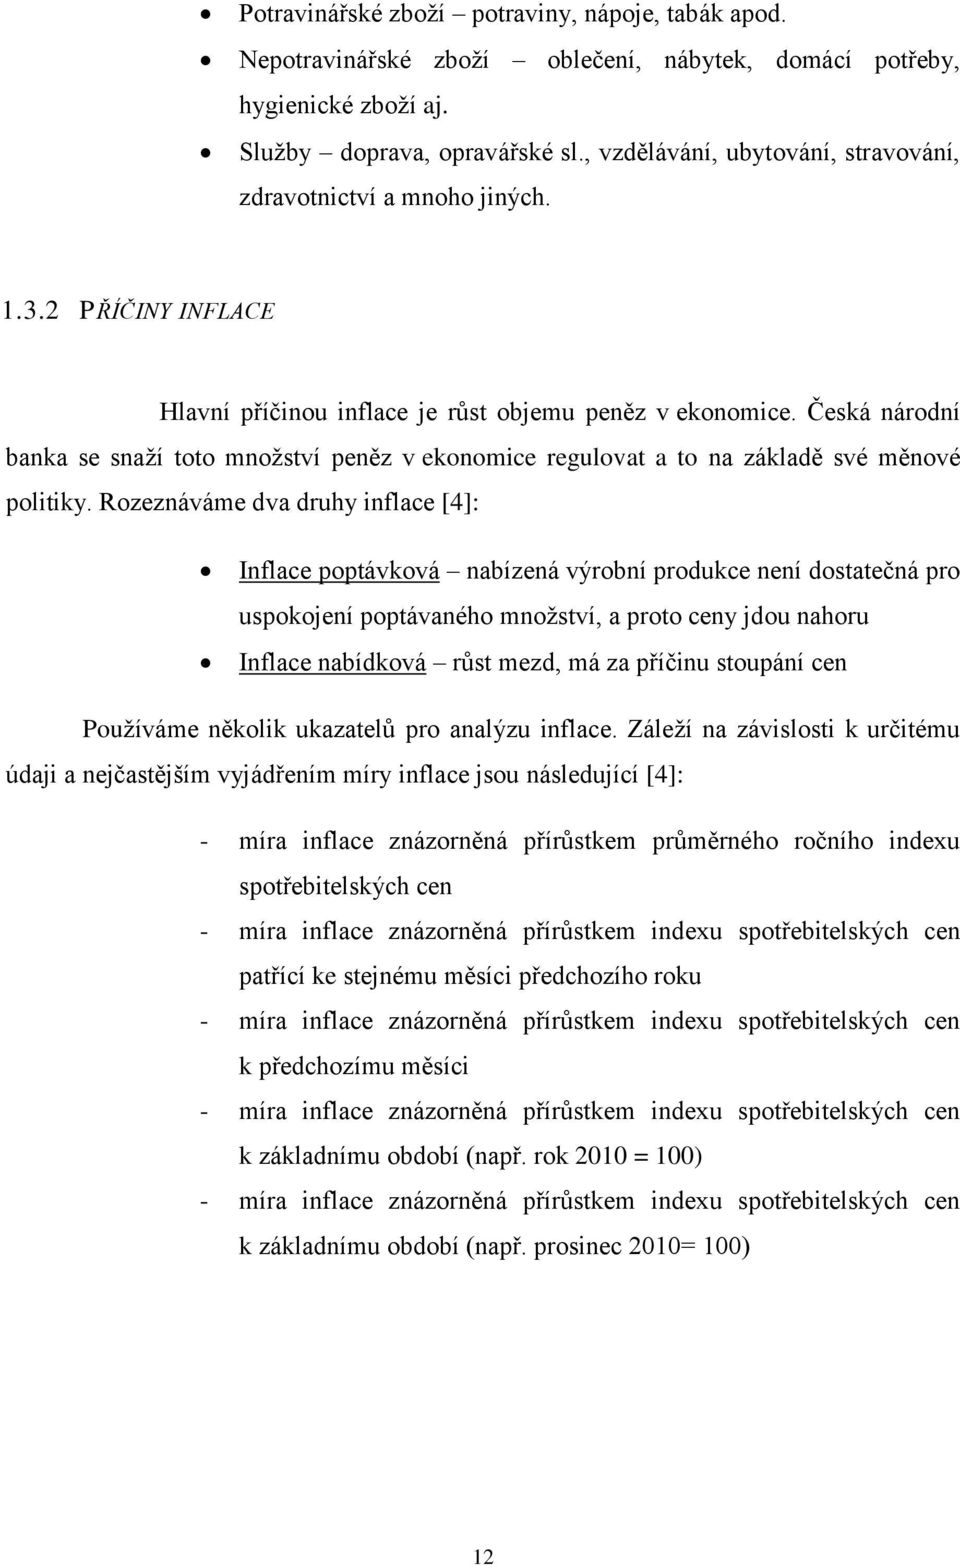 Fakulta ekonomicko-správní - PDF Stažení zdarma